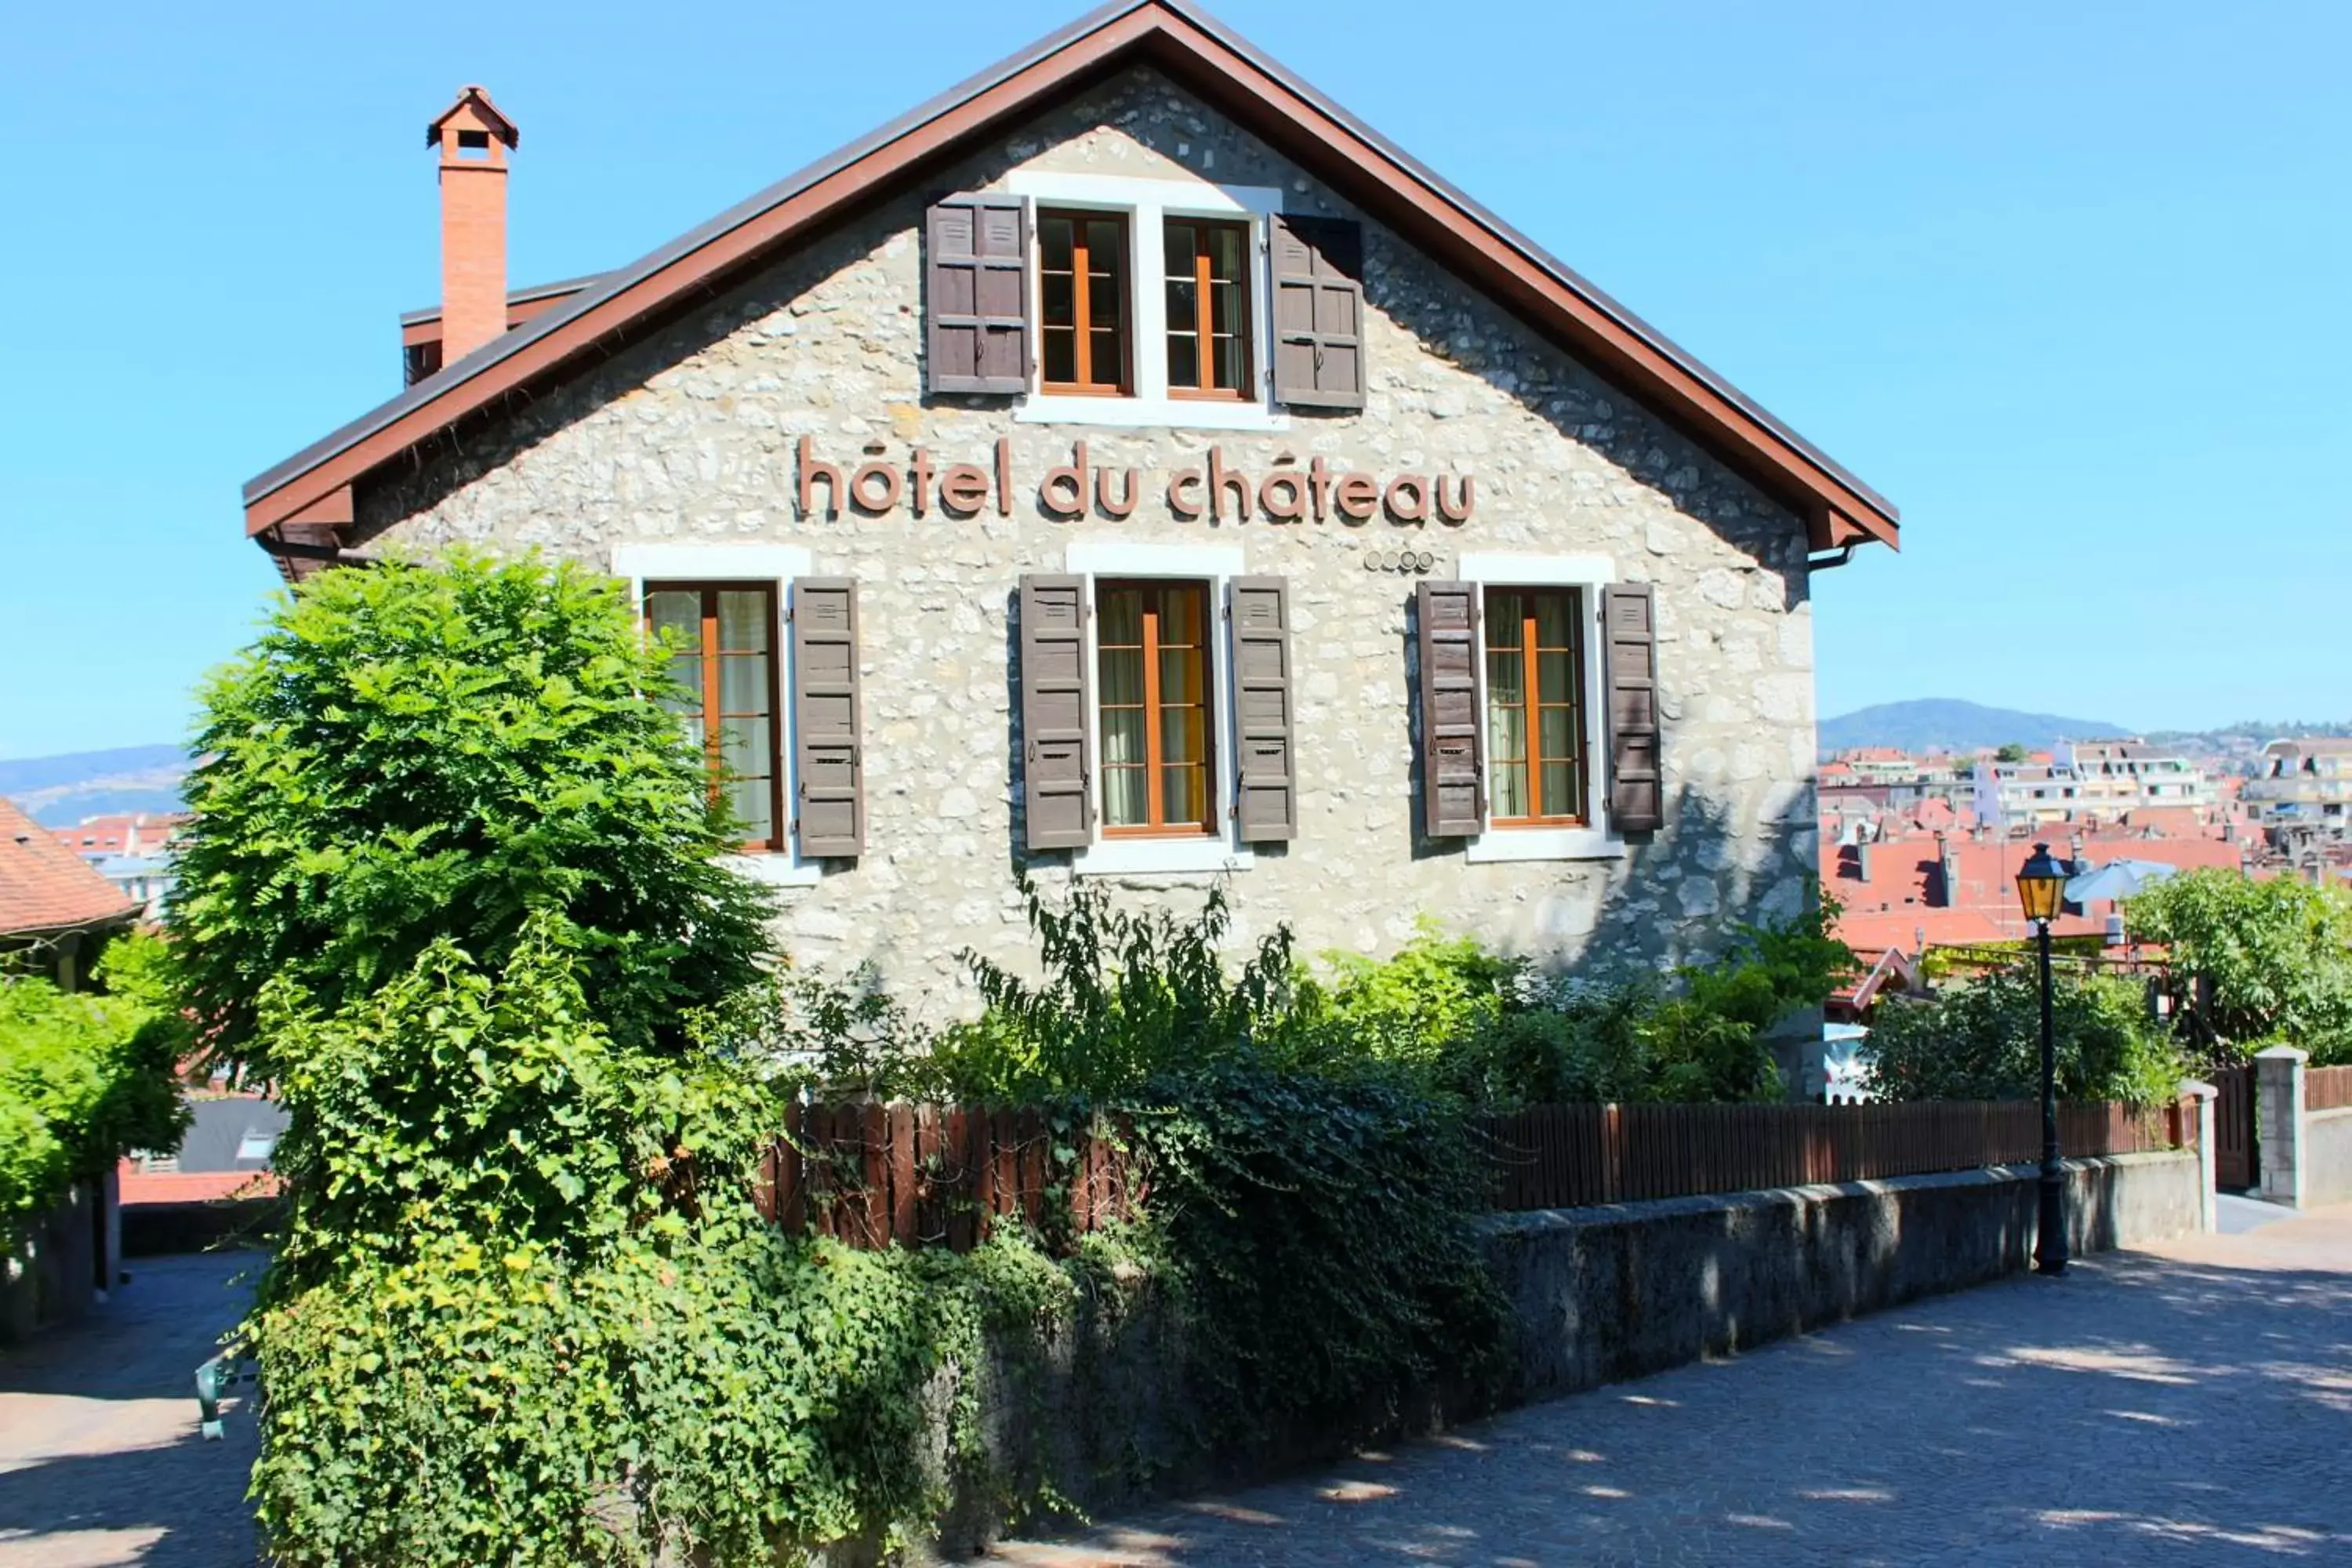 Property building in Hôtel du Château